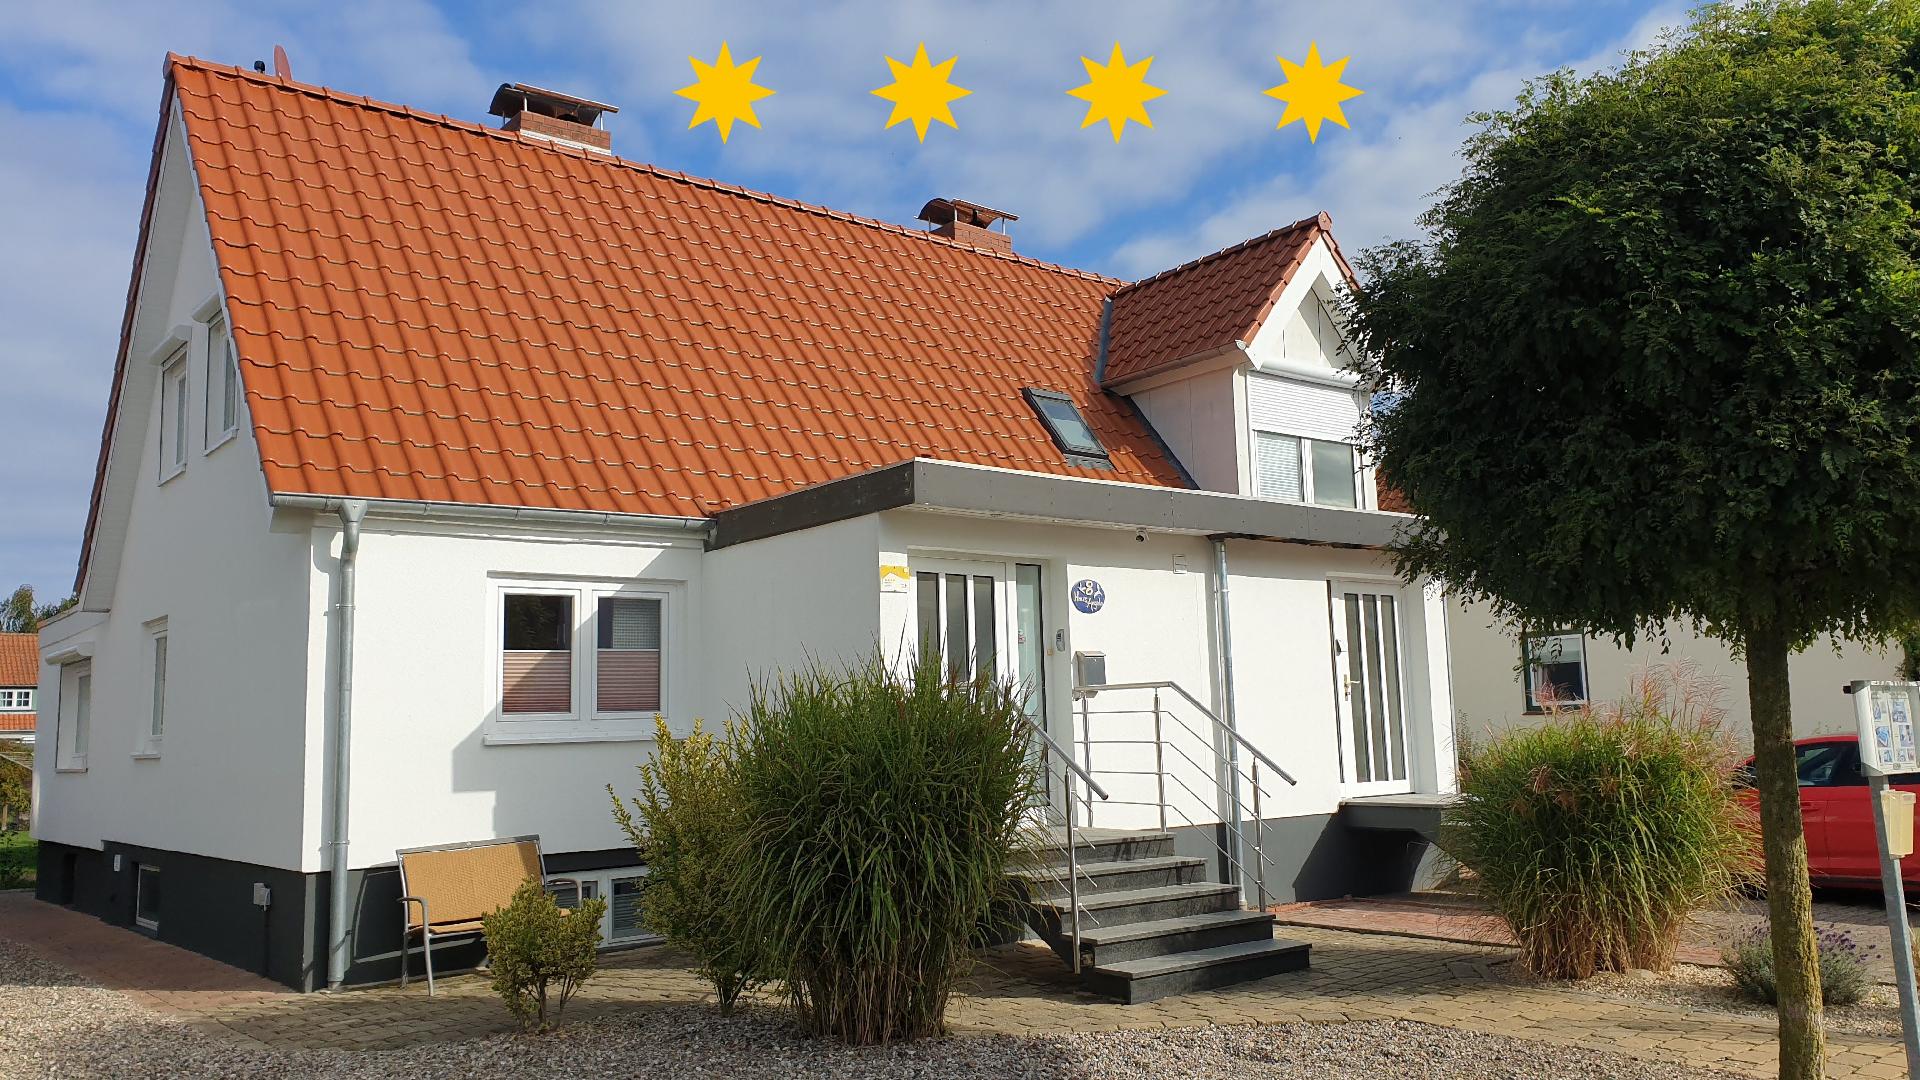 Ferienhaus in Kellenhusen mit Terrasse, Grill und  Ferienhaus in Schleswig Holstein